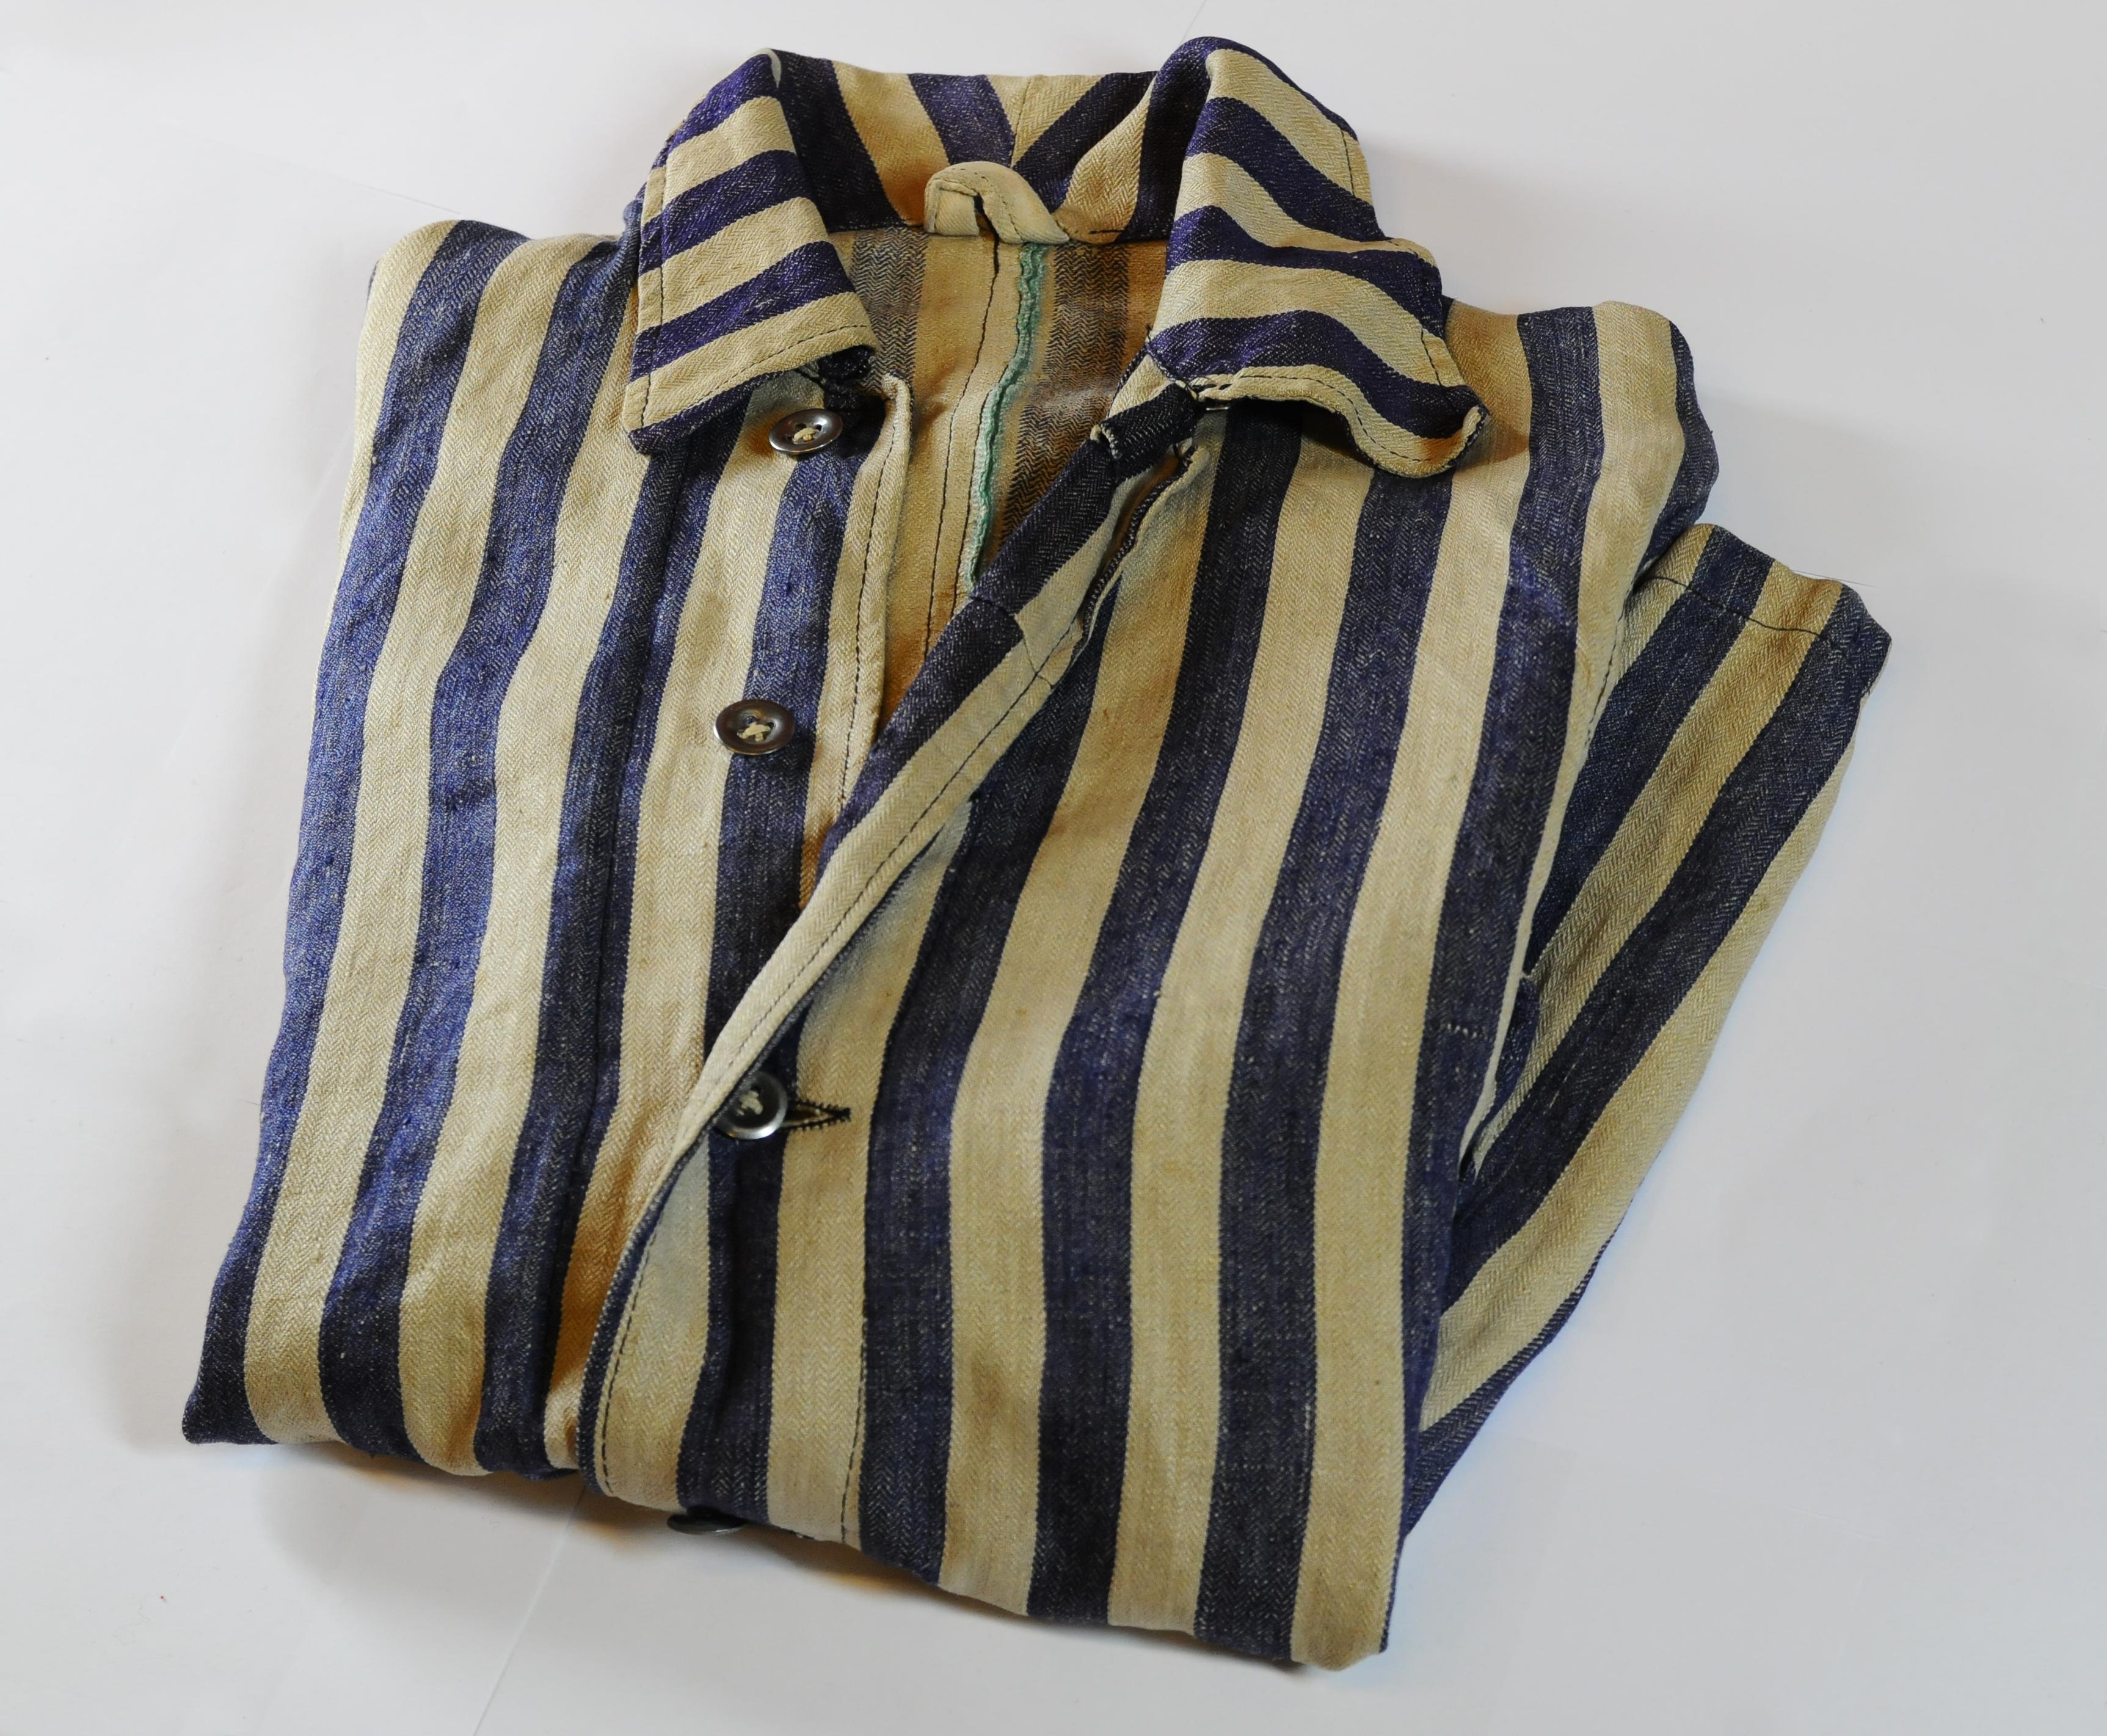 Giacca della divisa di Nedo Fiano indossata durante la prigionia